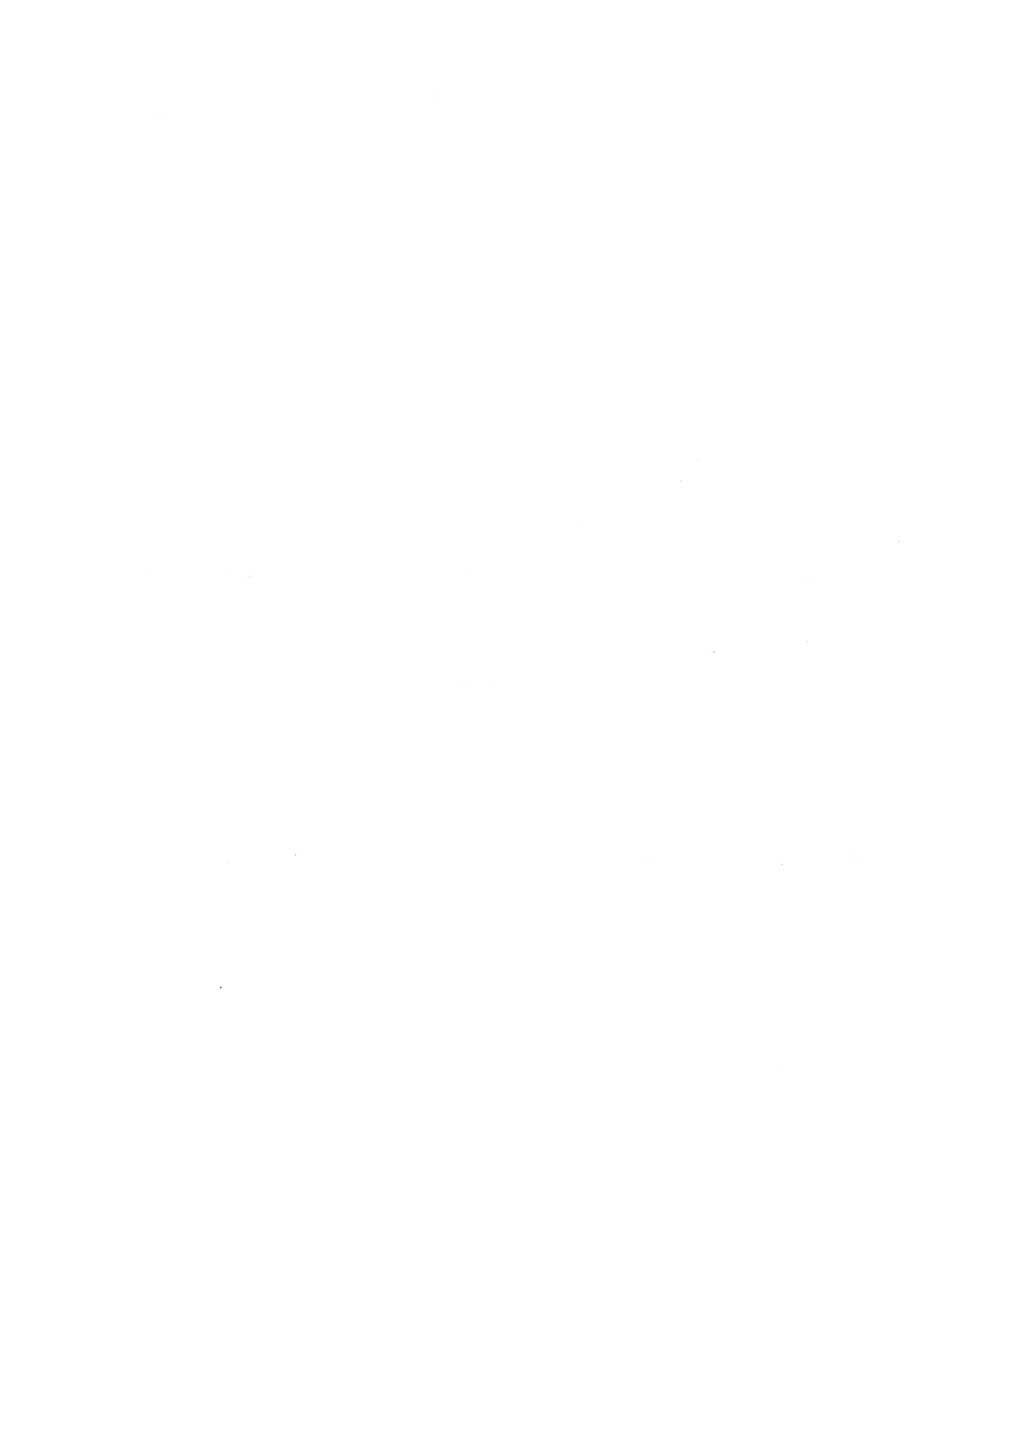 Protokoll der Verhandlungen des Ⅸ. Parteitages der Sozialistischen Einheitspartei Deutschlands (SED) [Deutsche Demokratische Republik (DDR)] 1976, Band 1, Seite 6 (Prot. Verh. Ⅸ. PT SED DDR 1976, Bd. 1, S. 6)